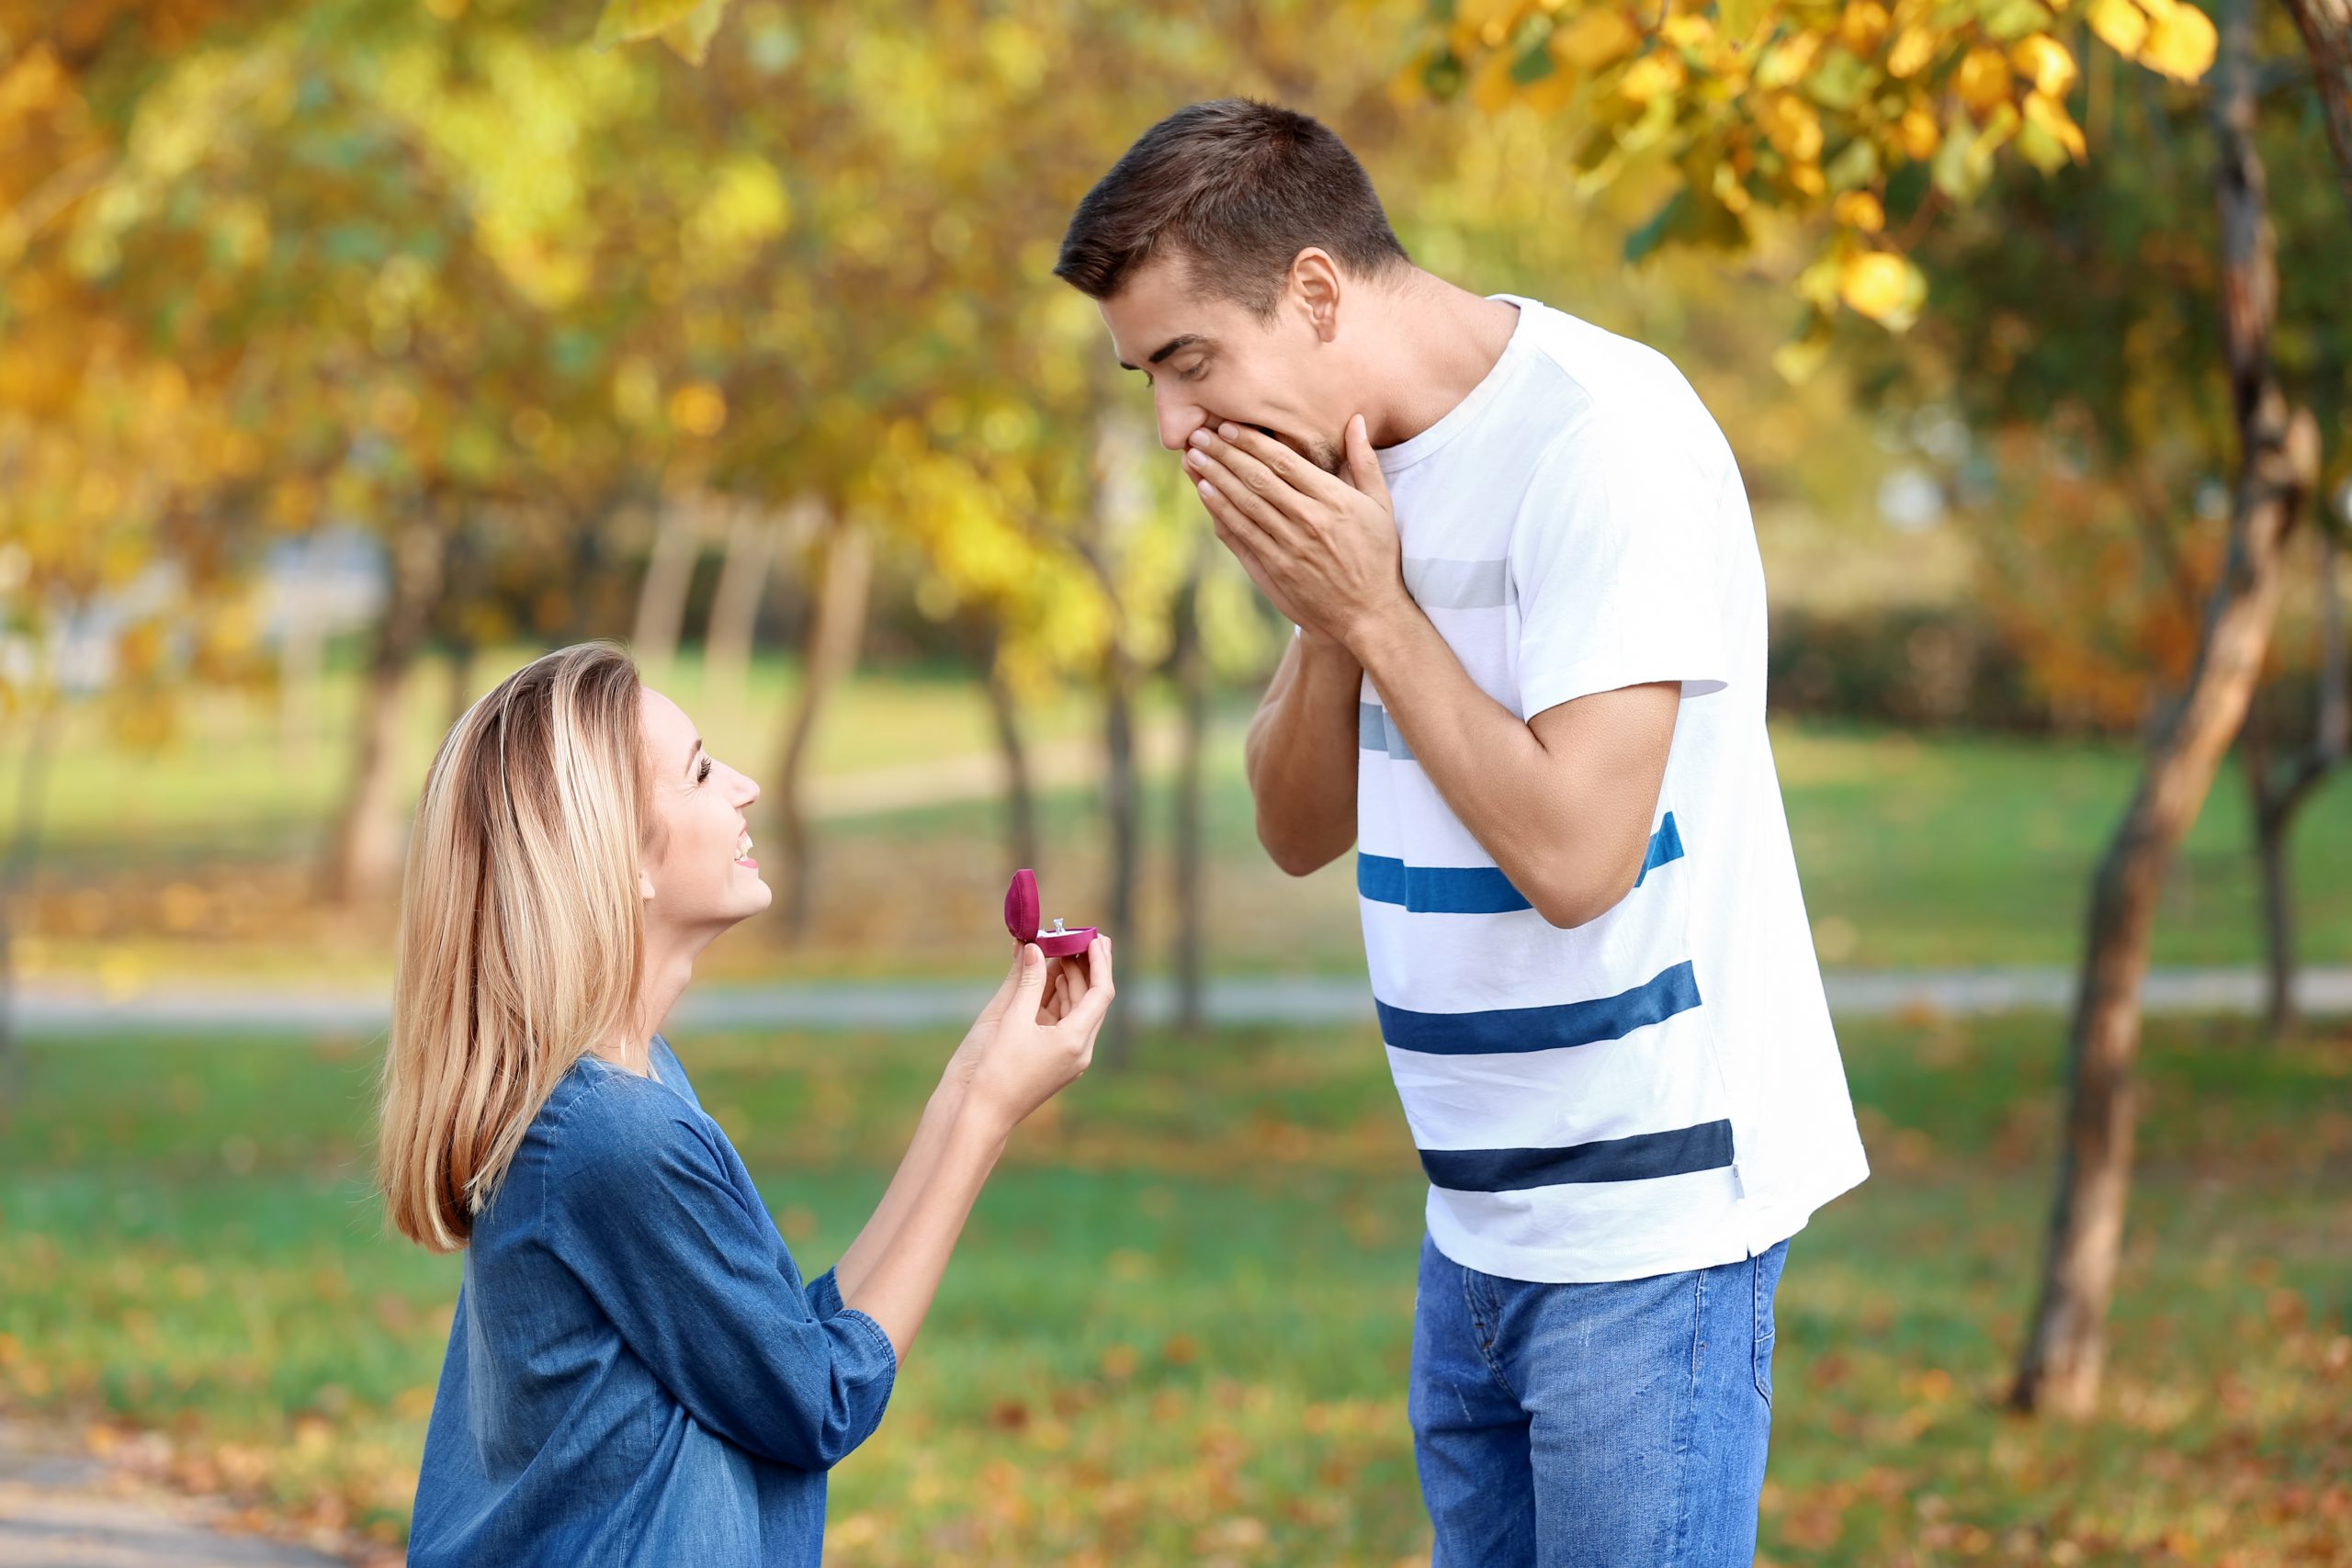 Leap year proposal - woman proposes to boyfriend